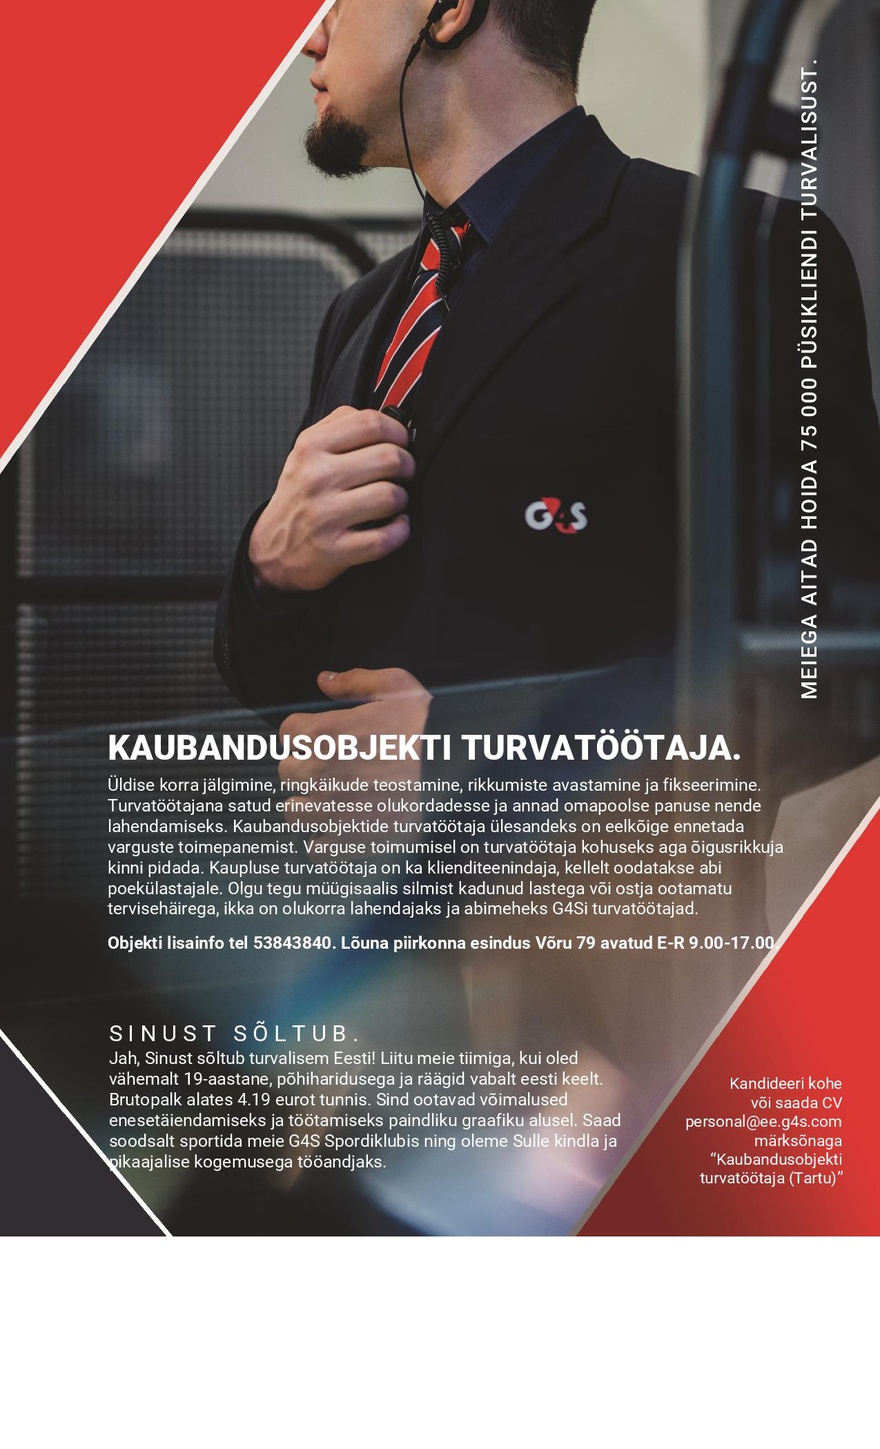 AS G4S Eesti Kaubandusobjekti turvatöötaja (Tartu)